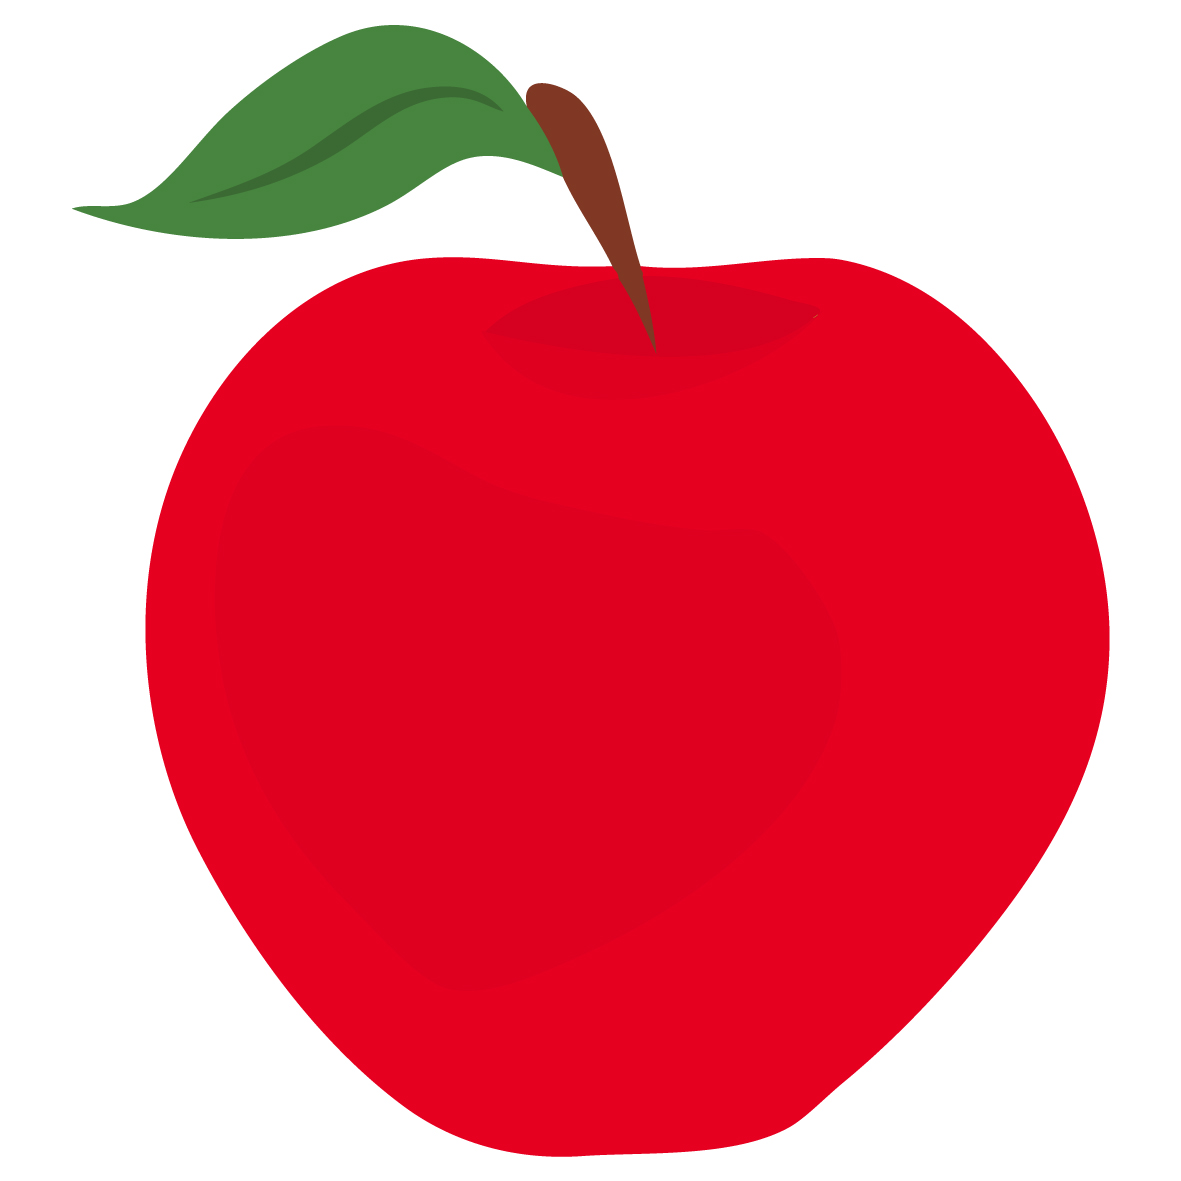 Red Apple Clipart - Tumundografico